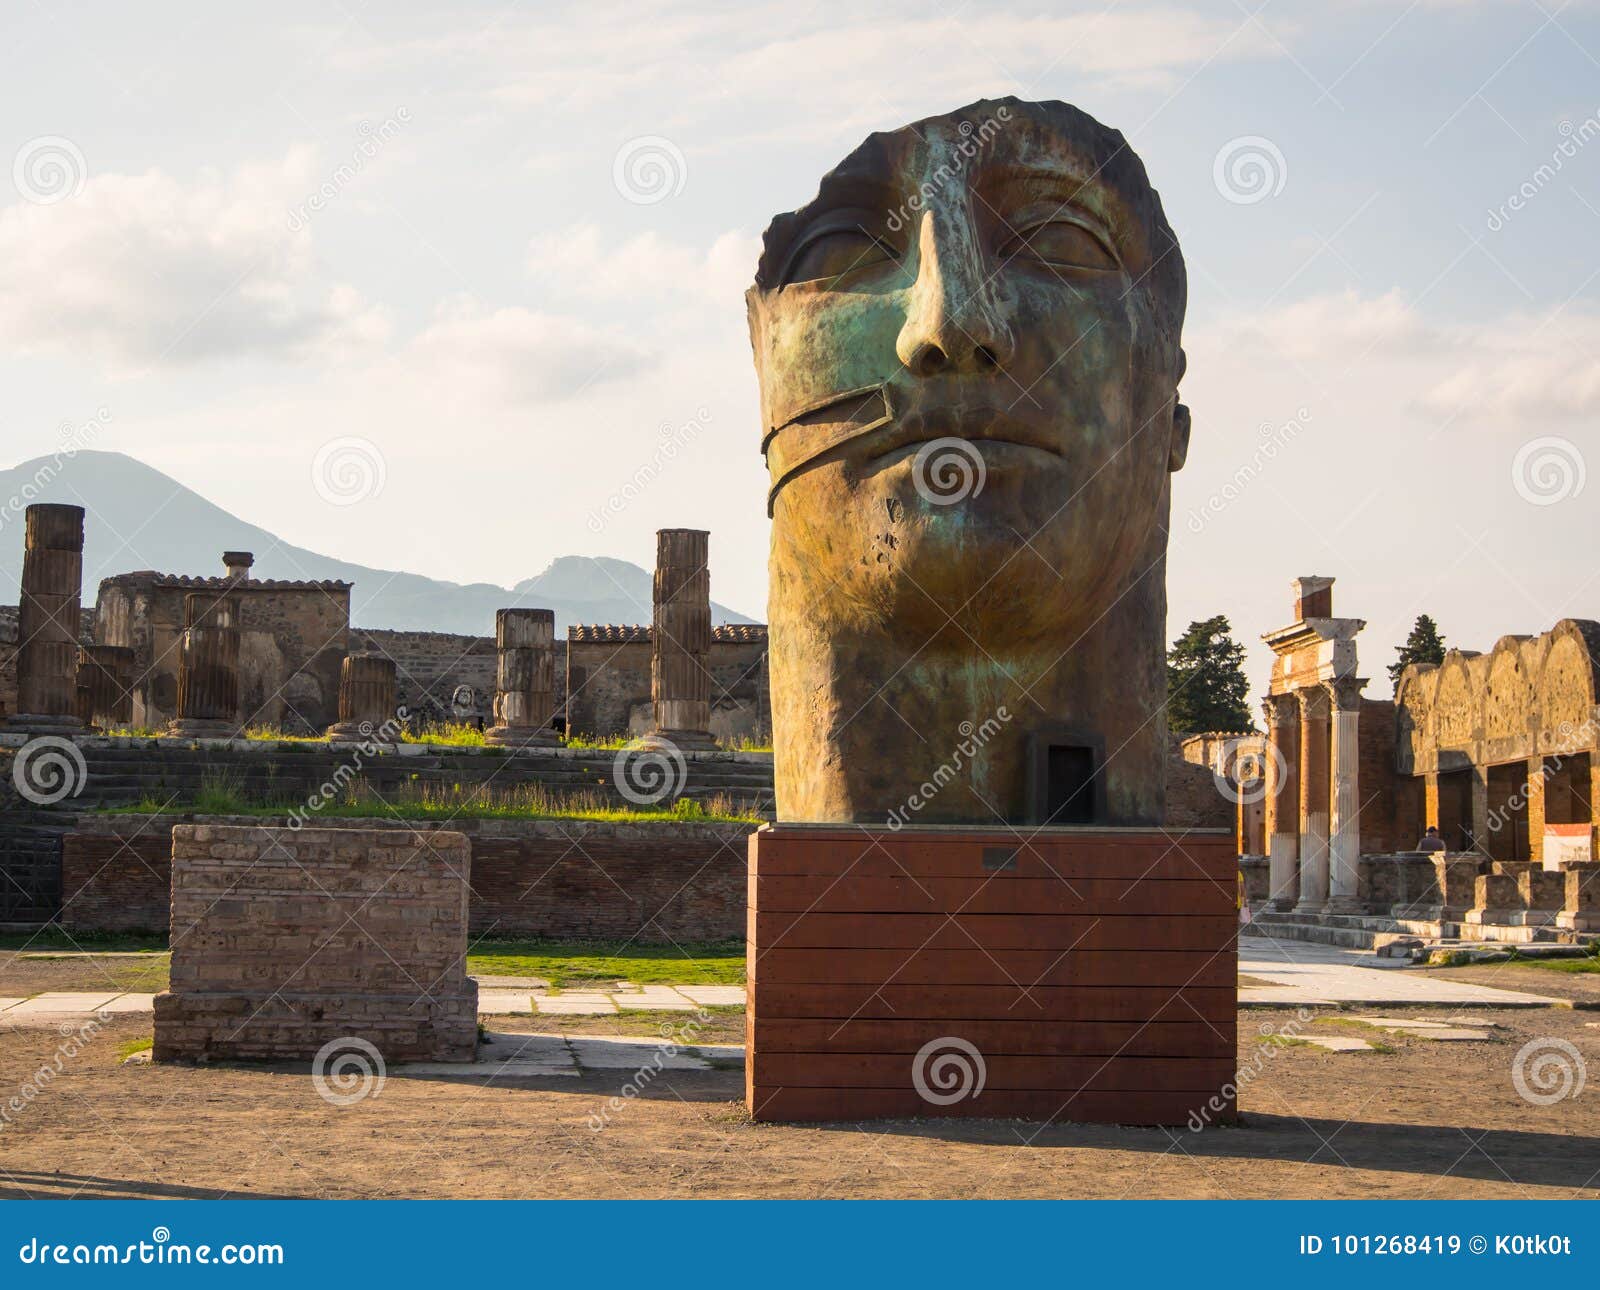 Igor Mitoraj Sculptures In Pompei Ruins Editorial Stock Image Image Of Igor Architecture